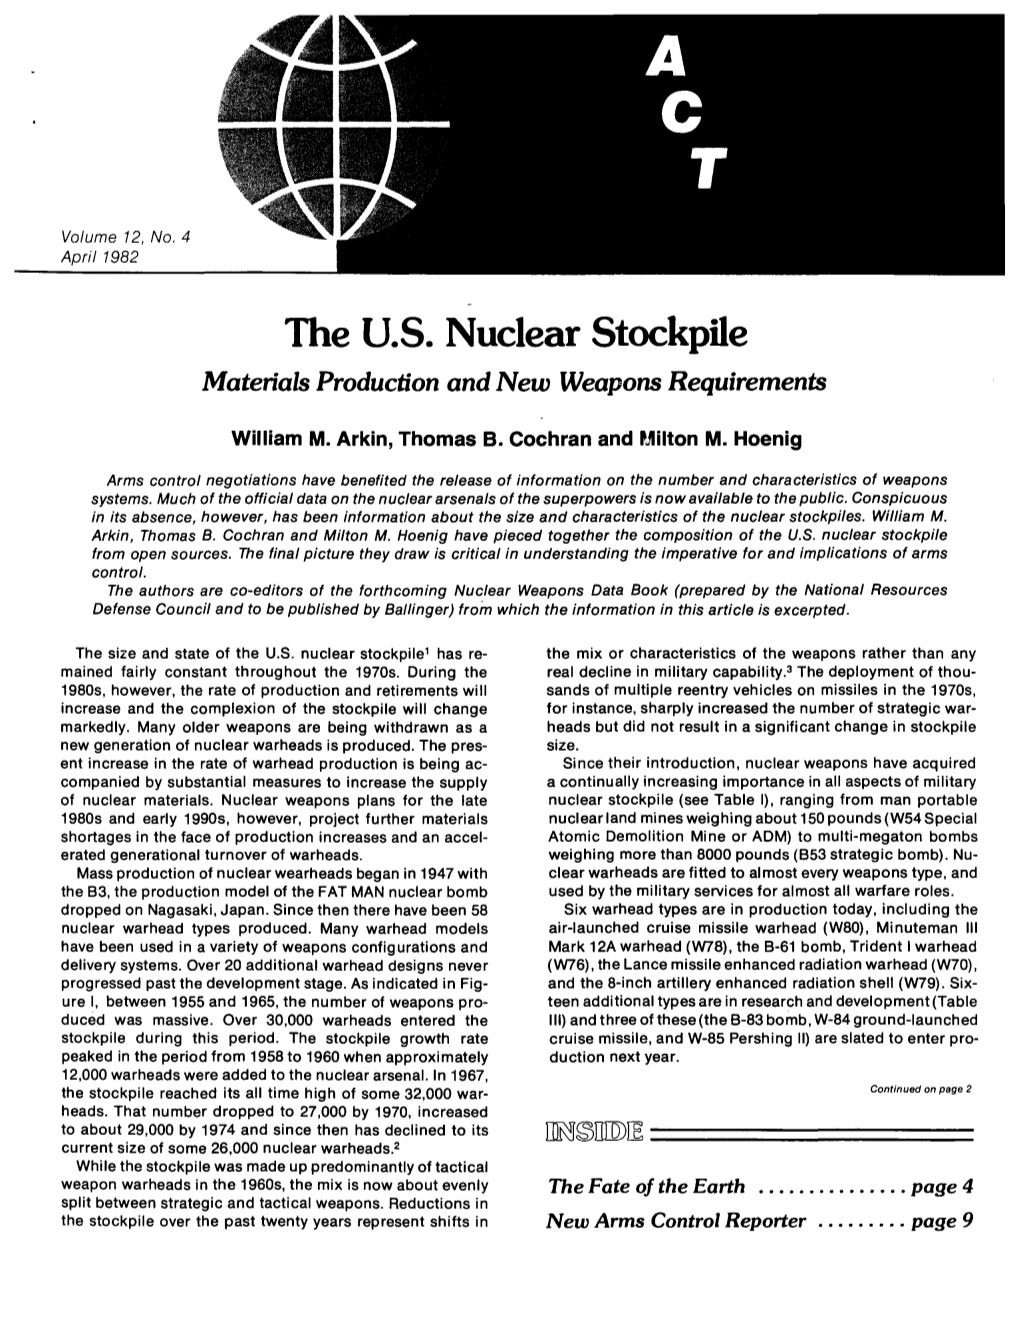 The Nuclear Stockpiles